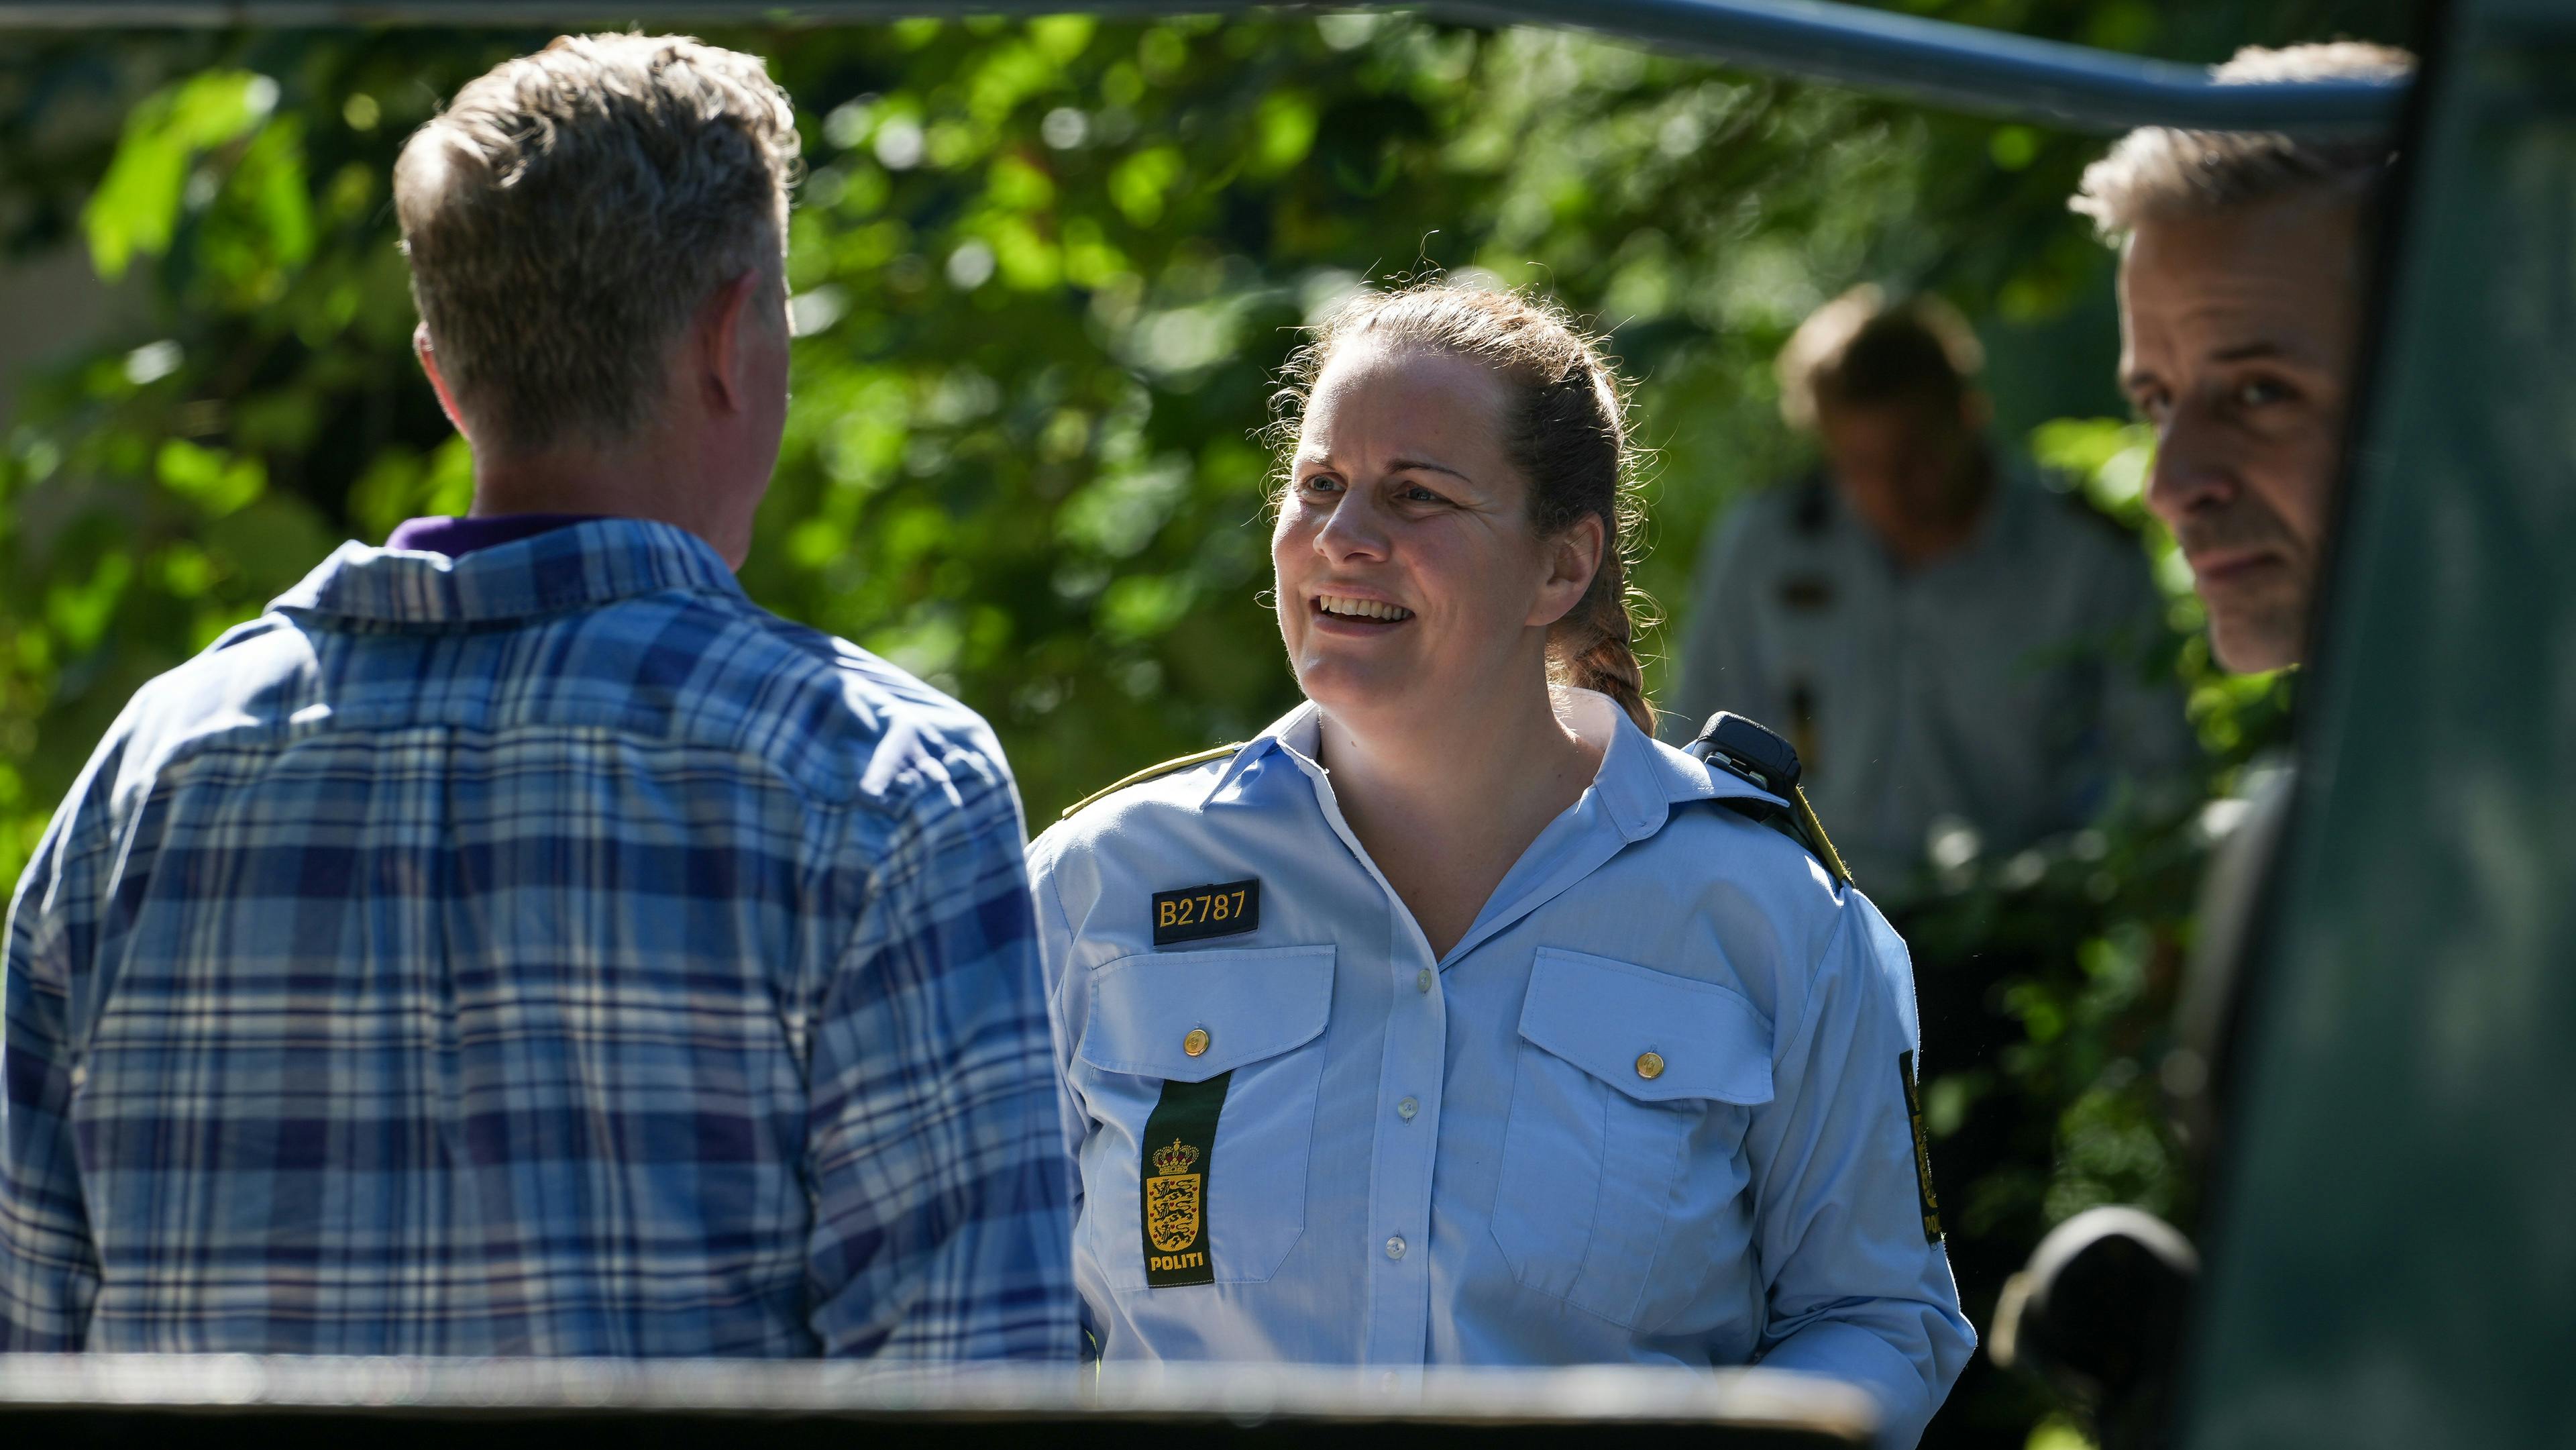 Lise Baastrups vender tilbage til TV 2 – denne gang med en rolle i den populære krimiserie "Sommerdahl", hvor hun i fjerde sæson spiller betjenten Nadia.